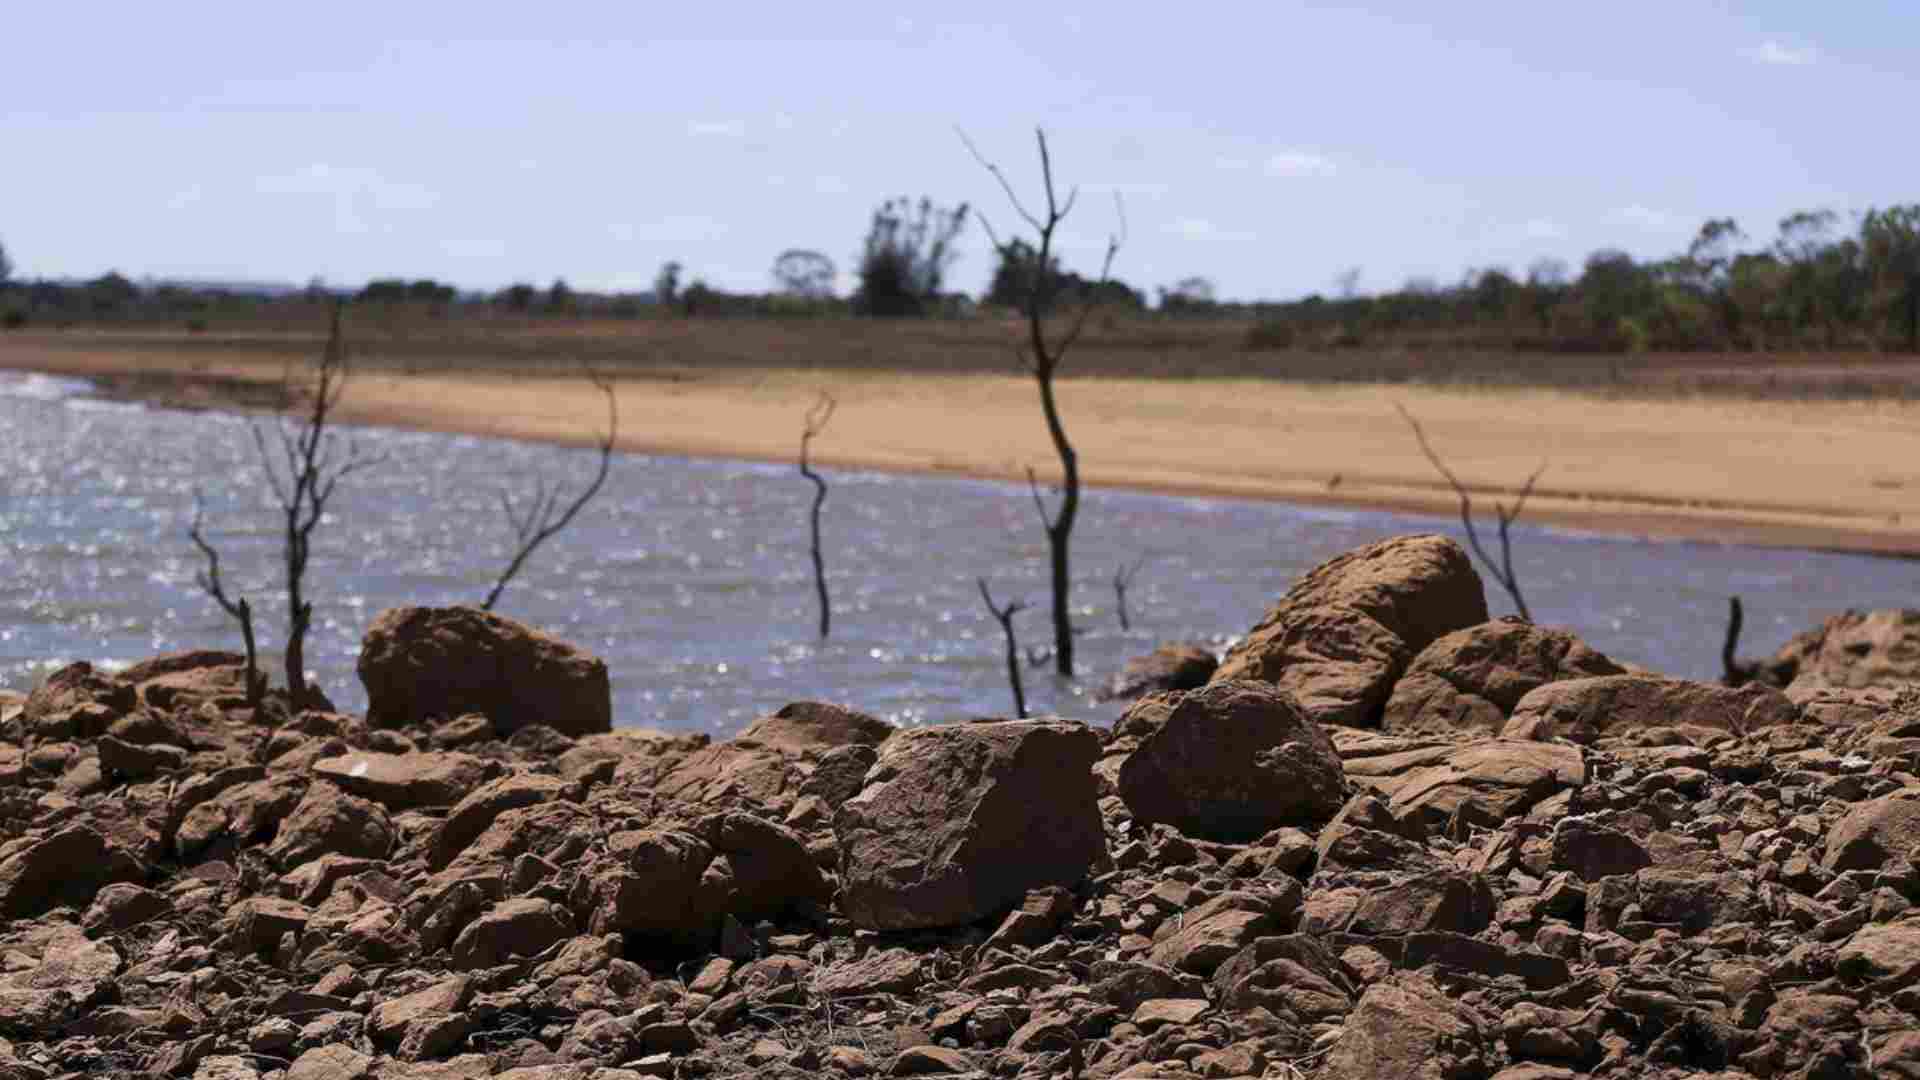 Comitiva vai ao Rio Grande do Sul conferir prejuízos com a seca